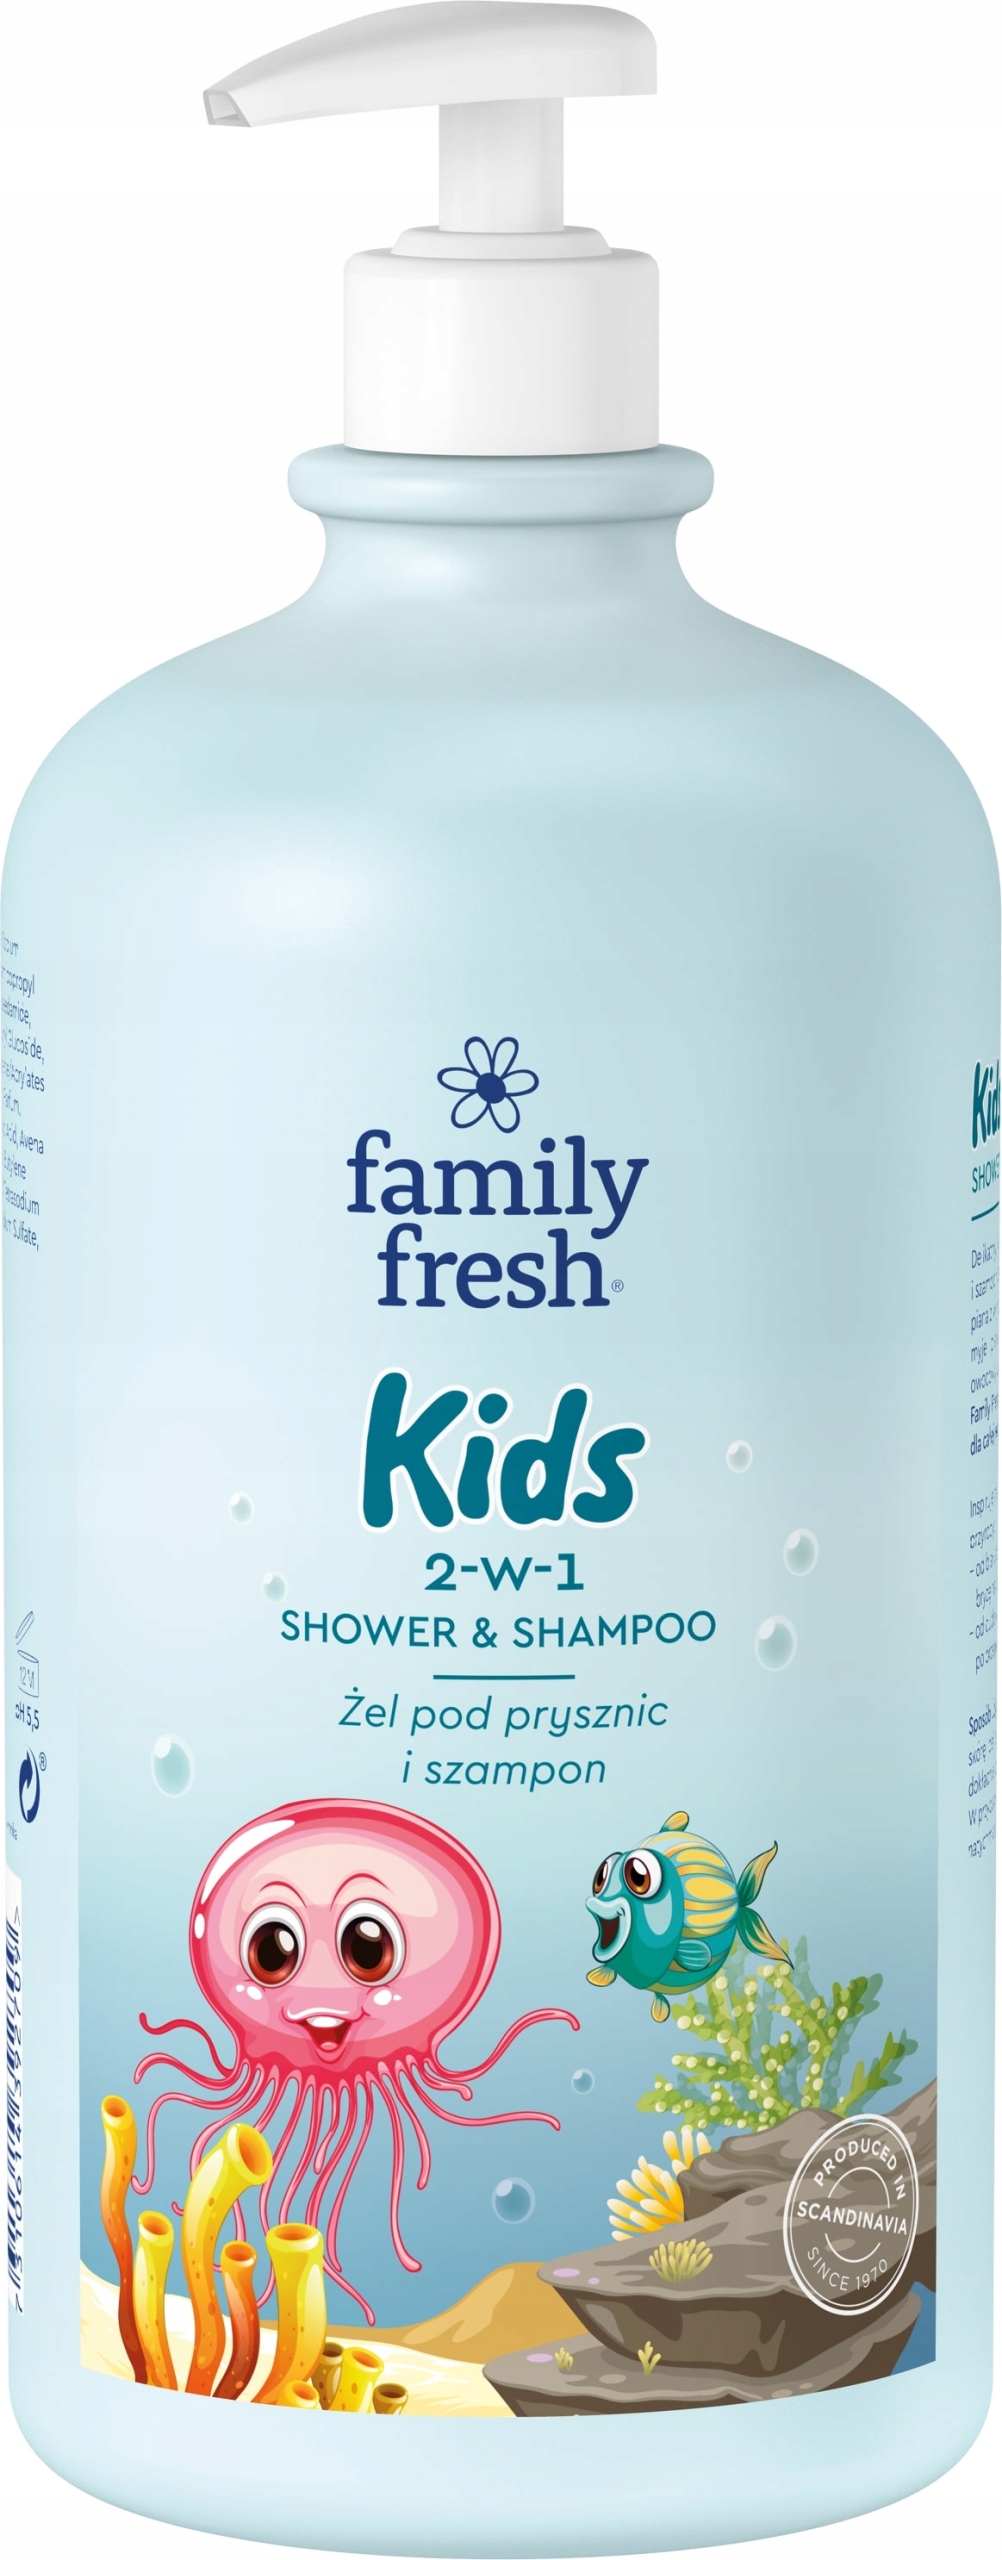 soraya family fresh żel szampon 2w1 kids 1000ml skład